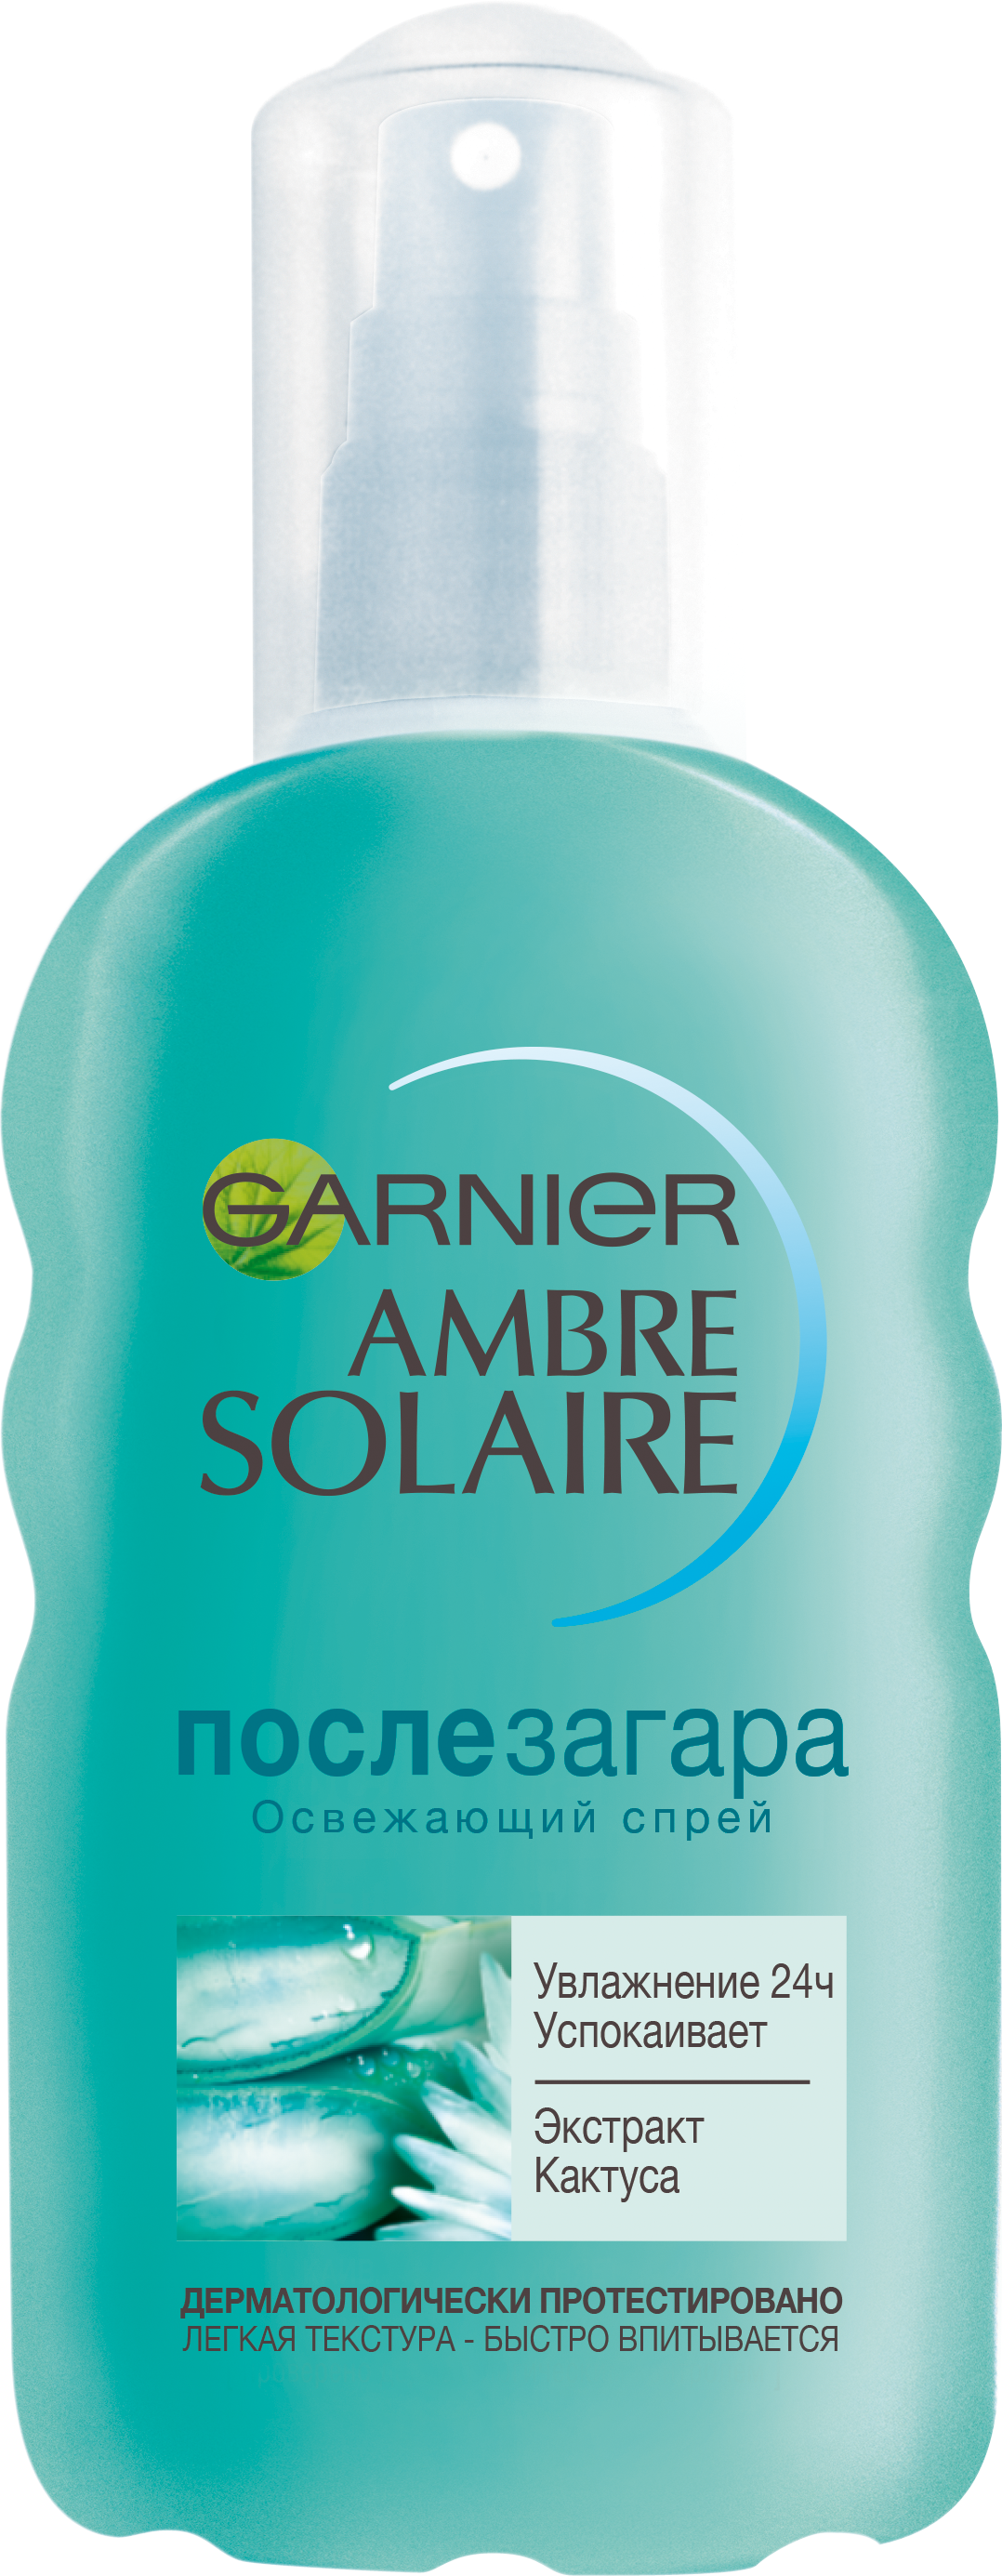 Спрей для тела после загара Garnier Ambre Solaire увлажняющий с экстрактом кактуса, 200 мл